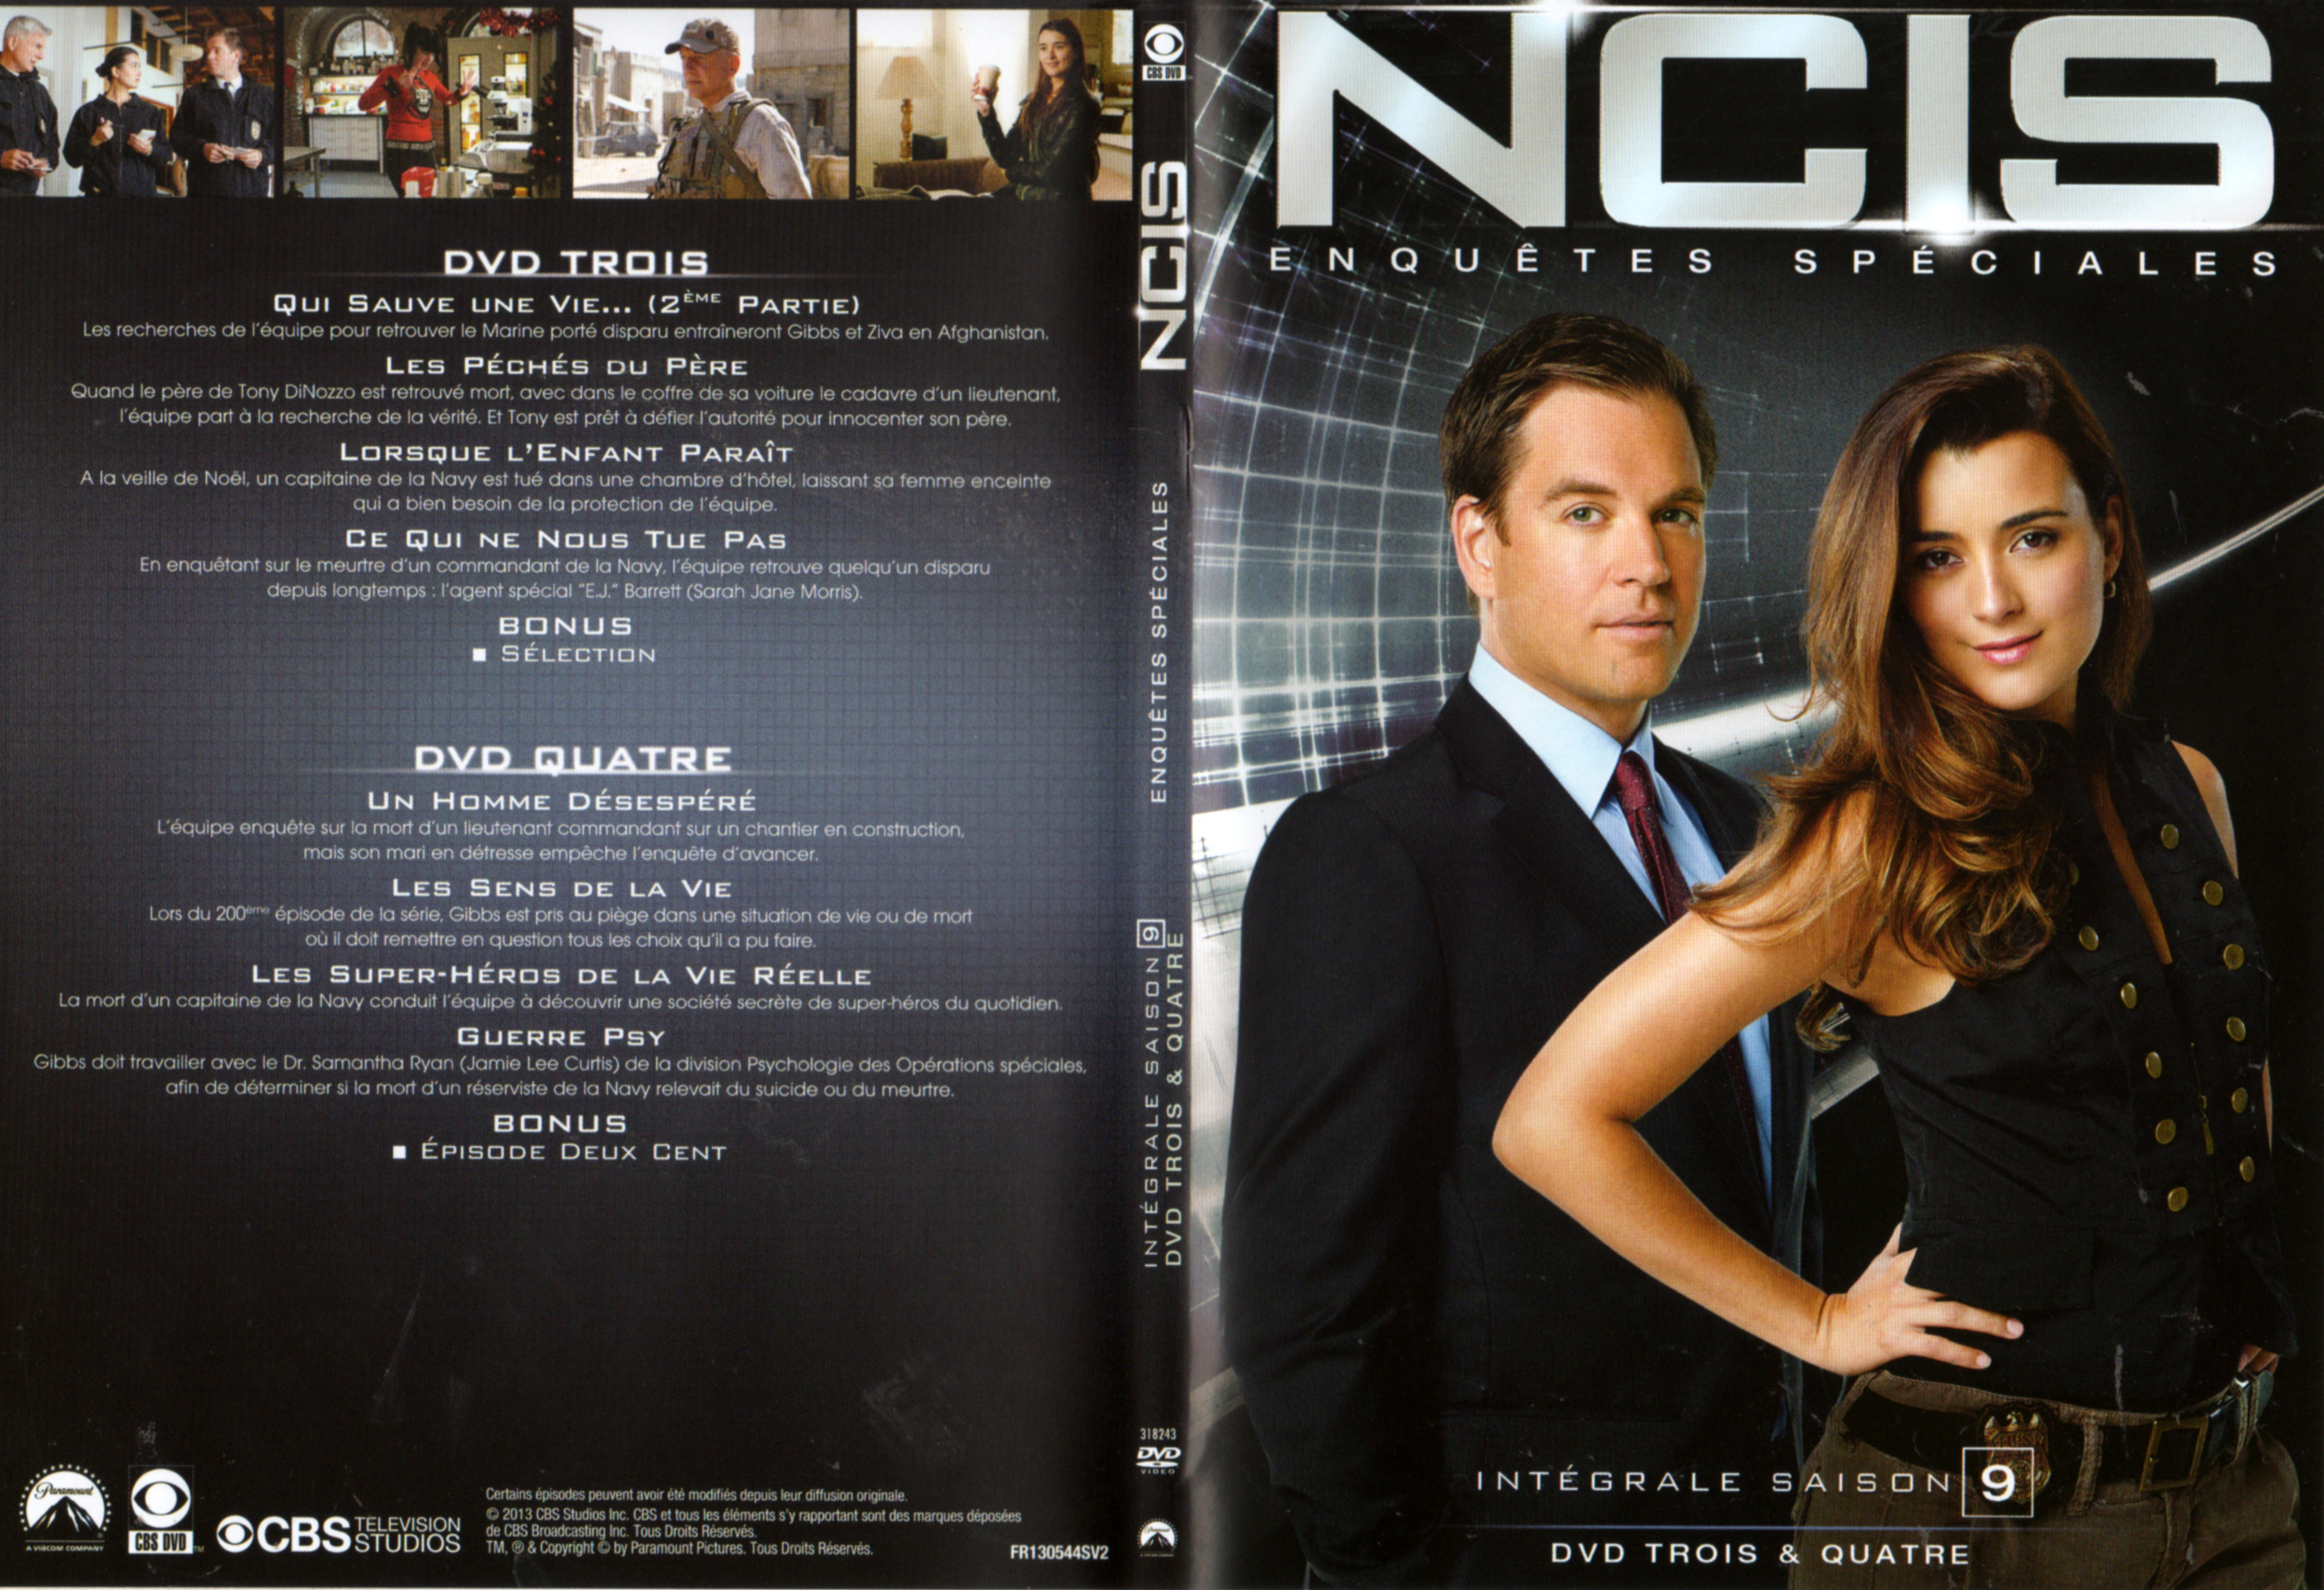 Jaquette DVD NCIS Saison 9 DVD 2